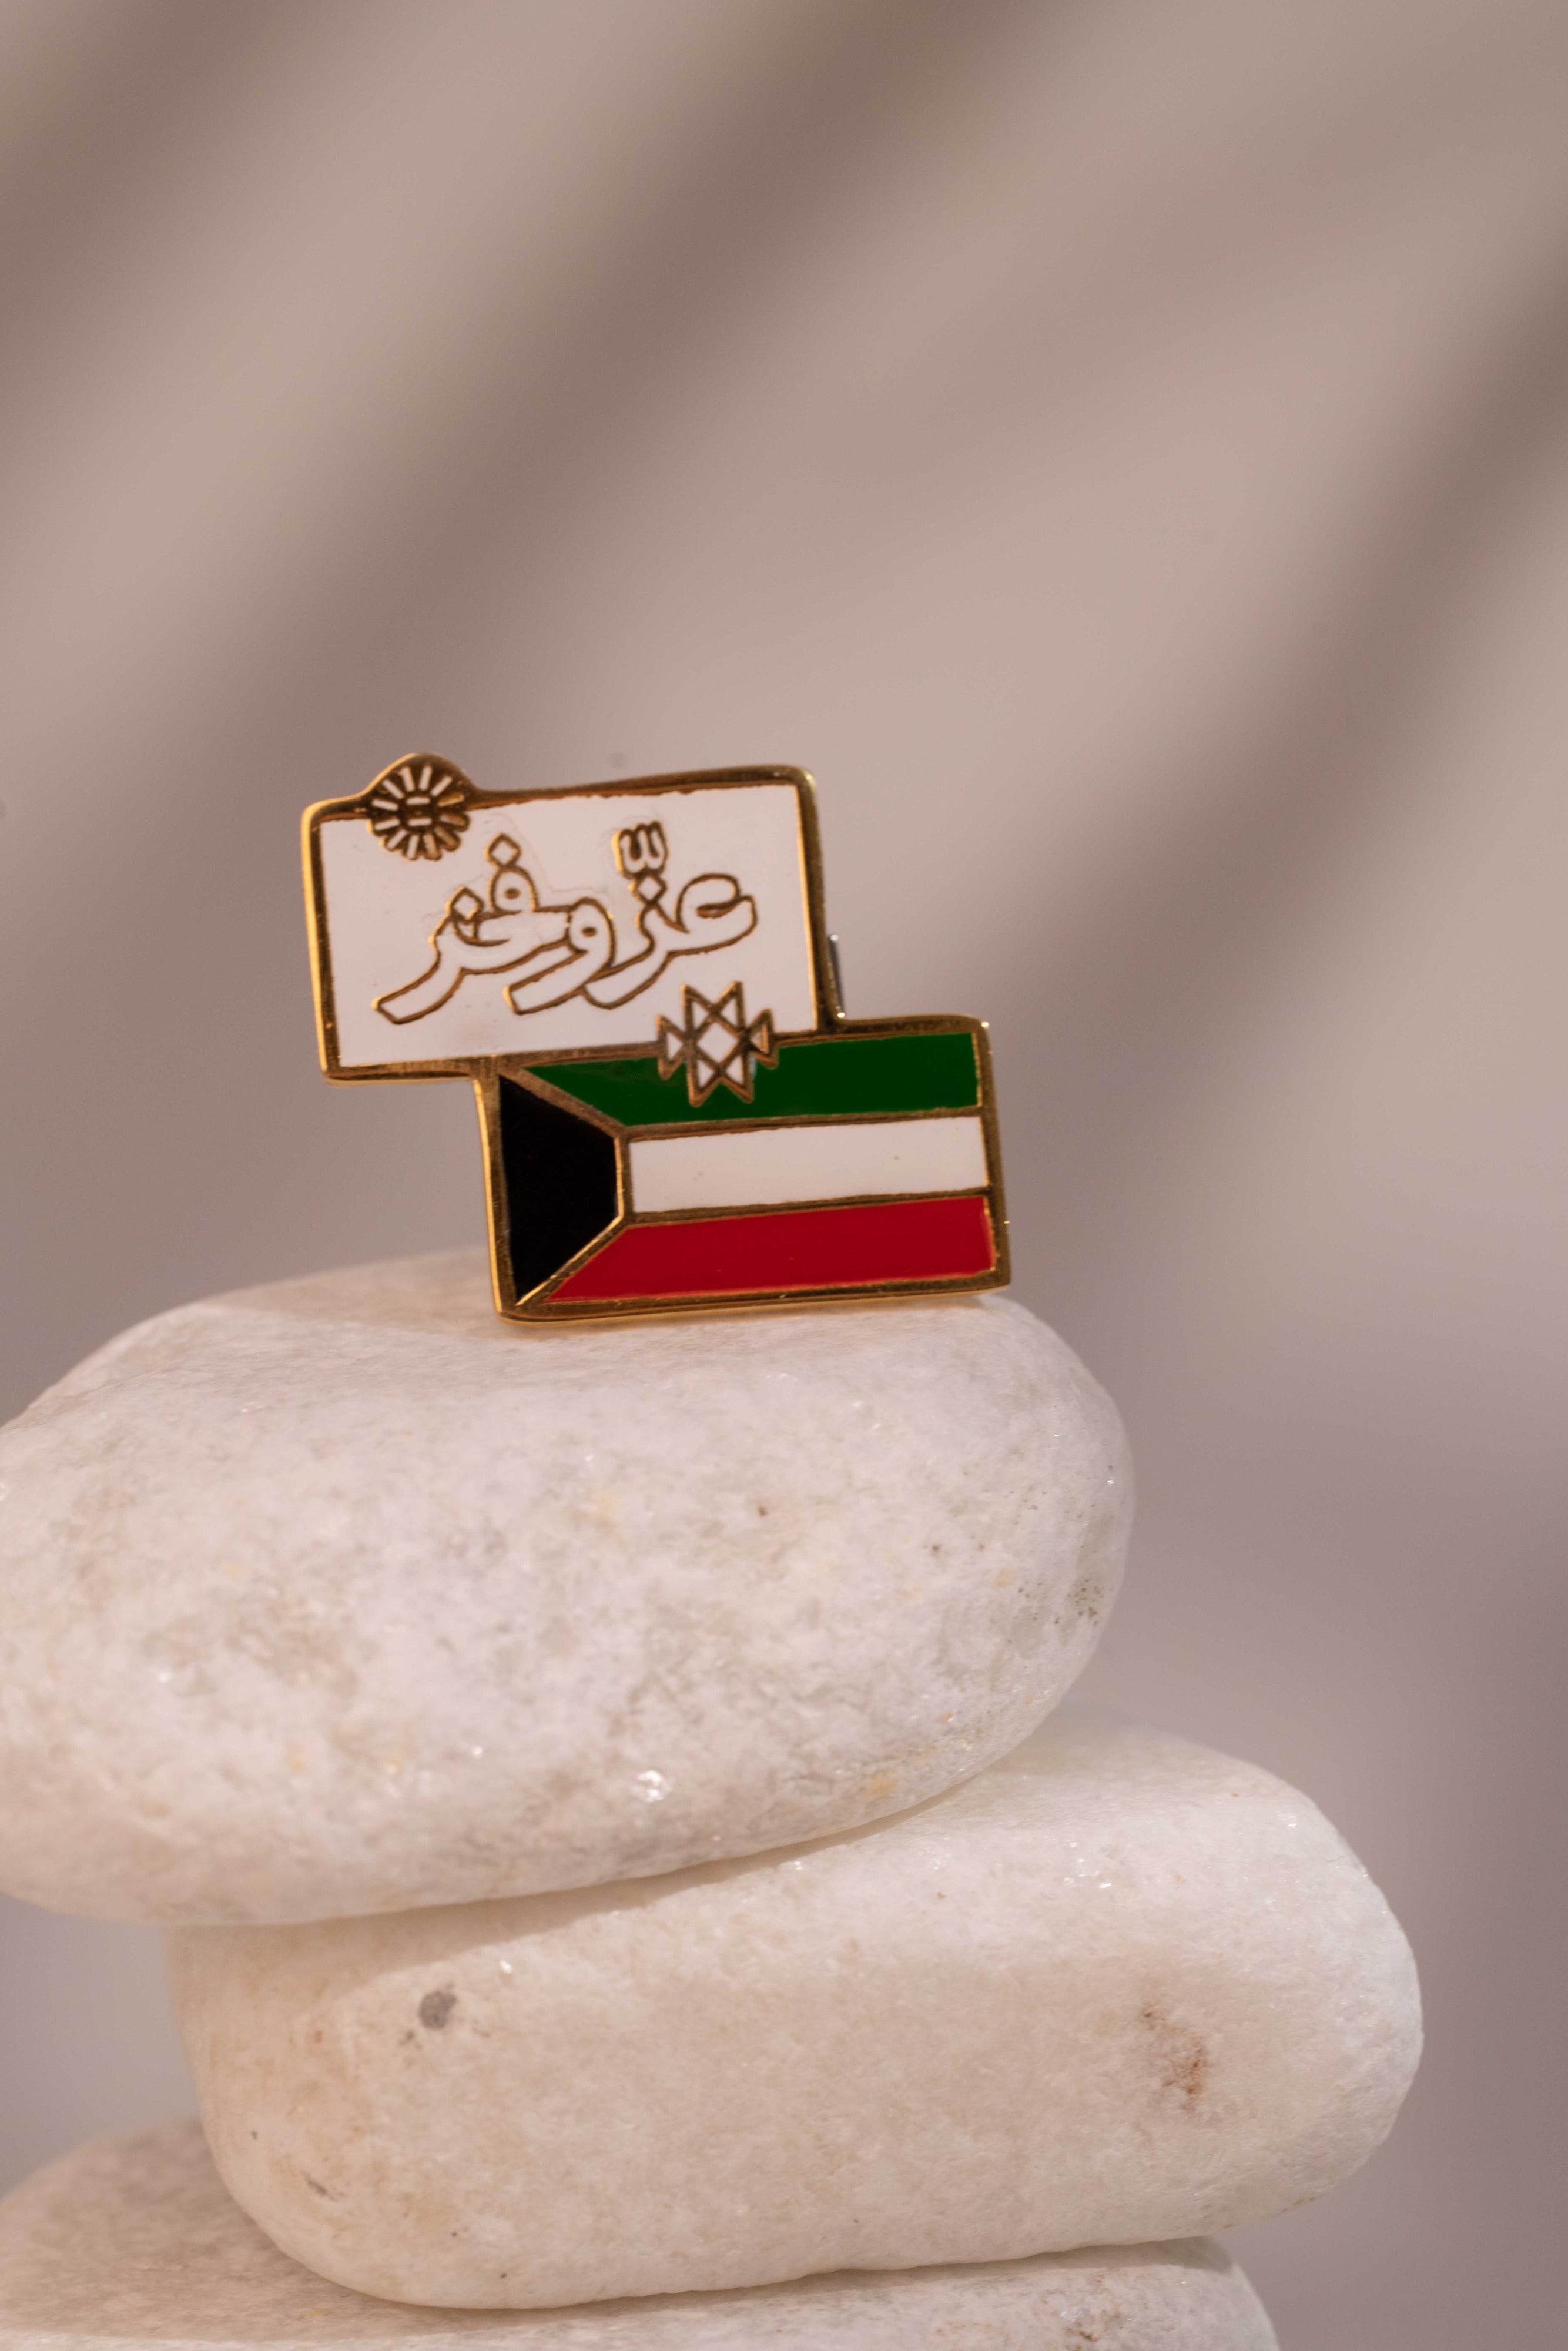 Kuwait glory and proud pin - Yshmk